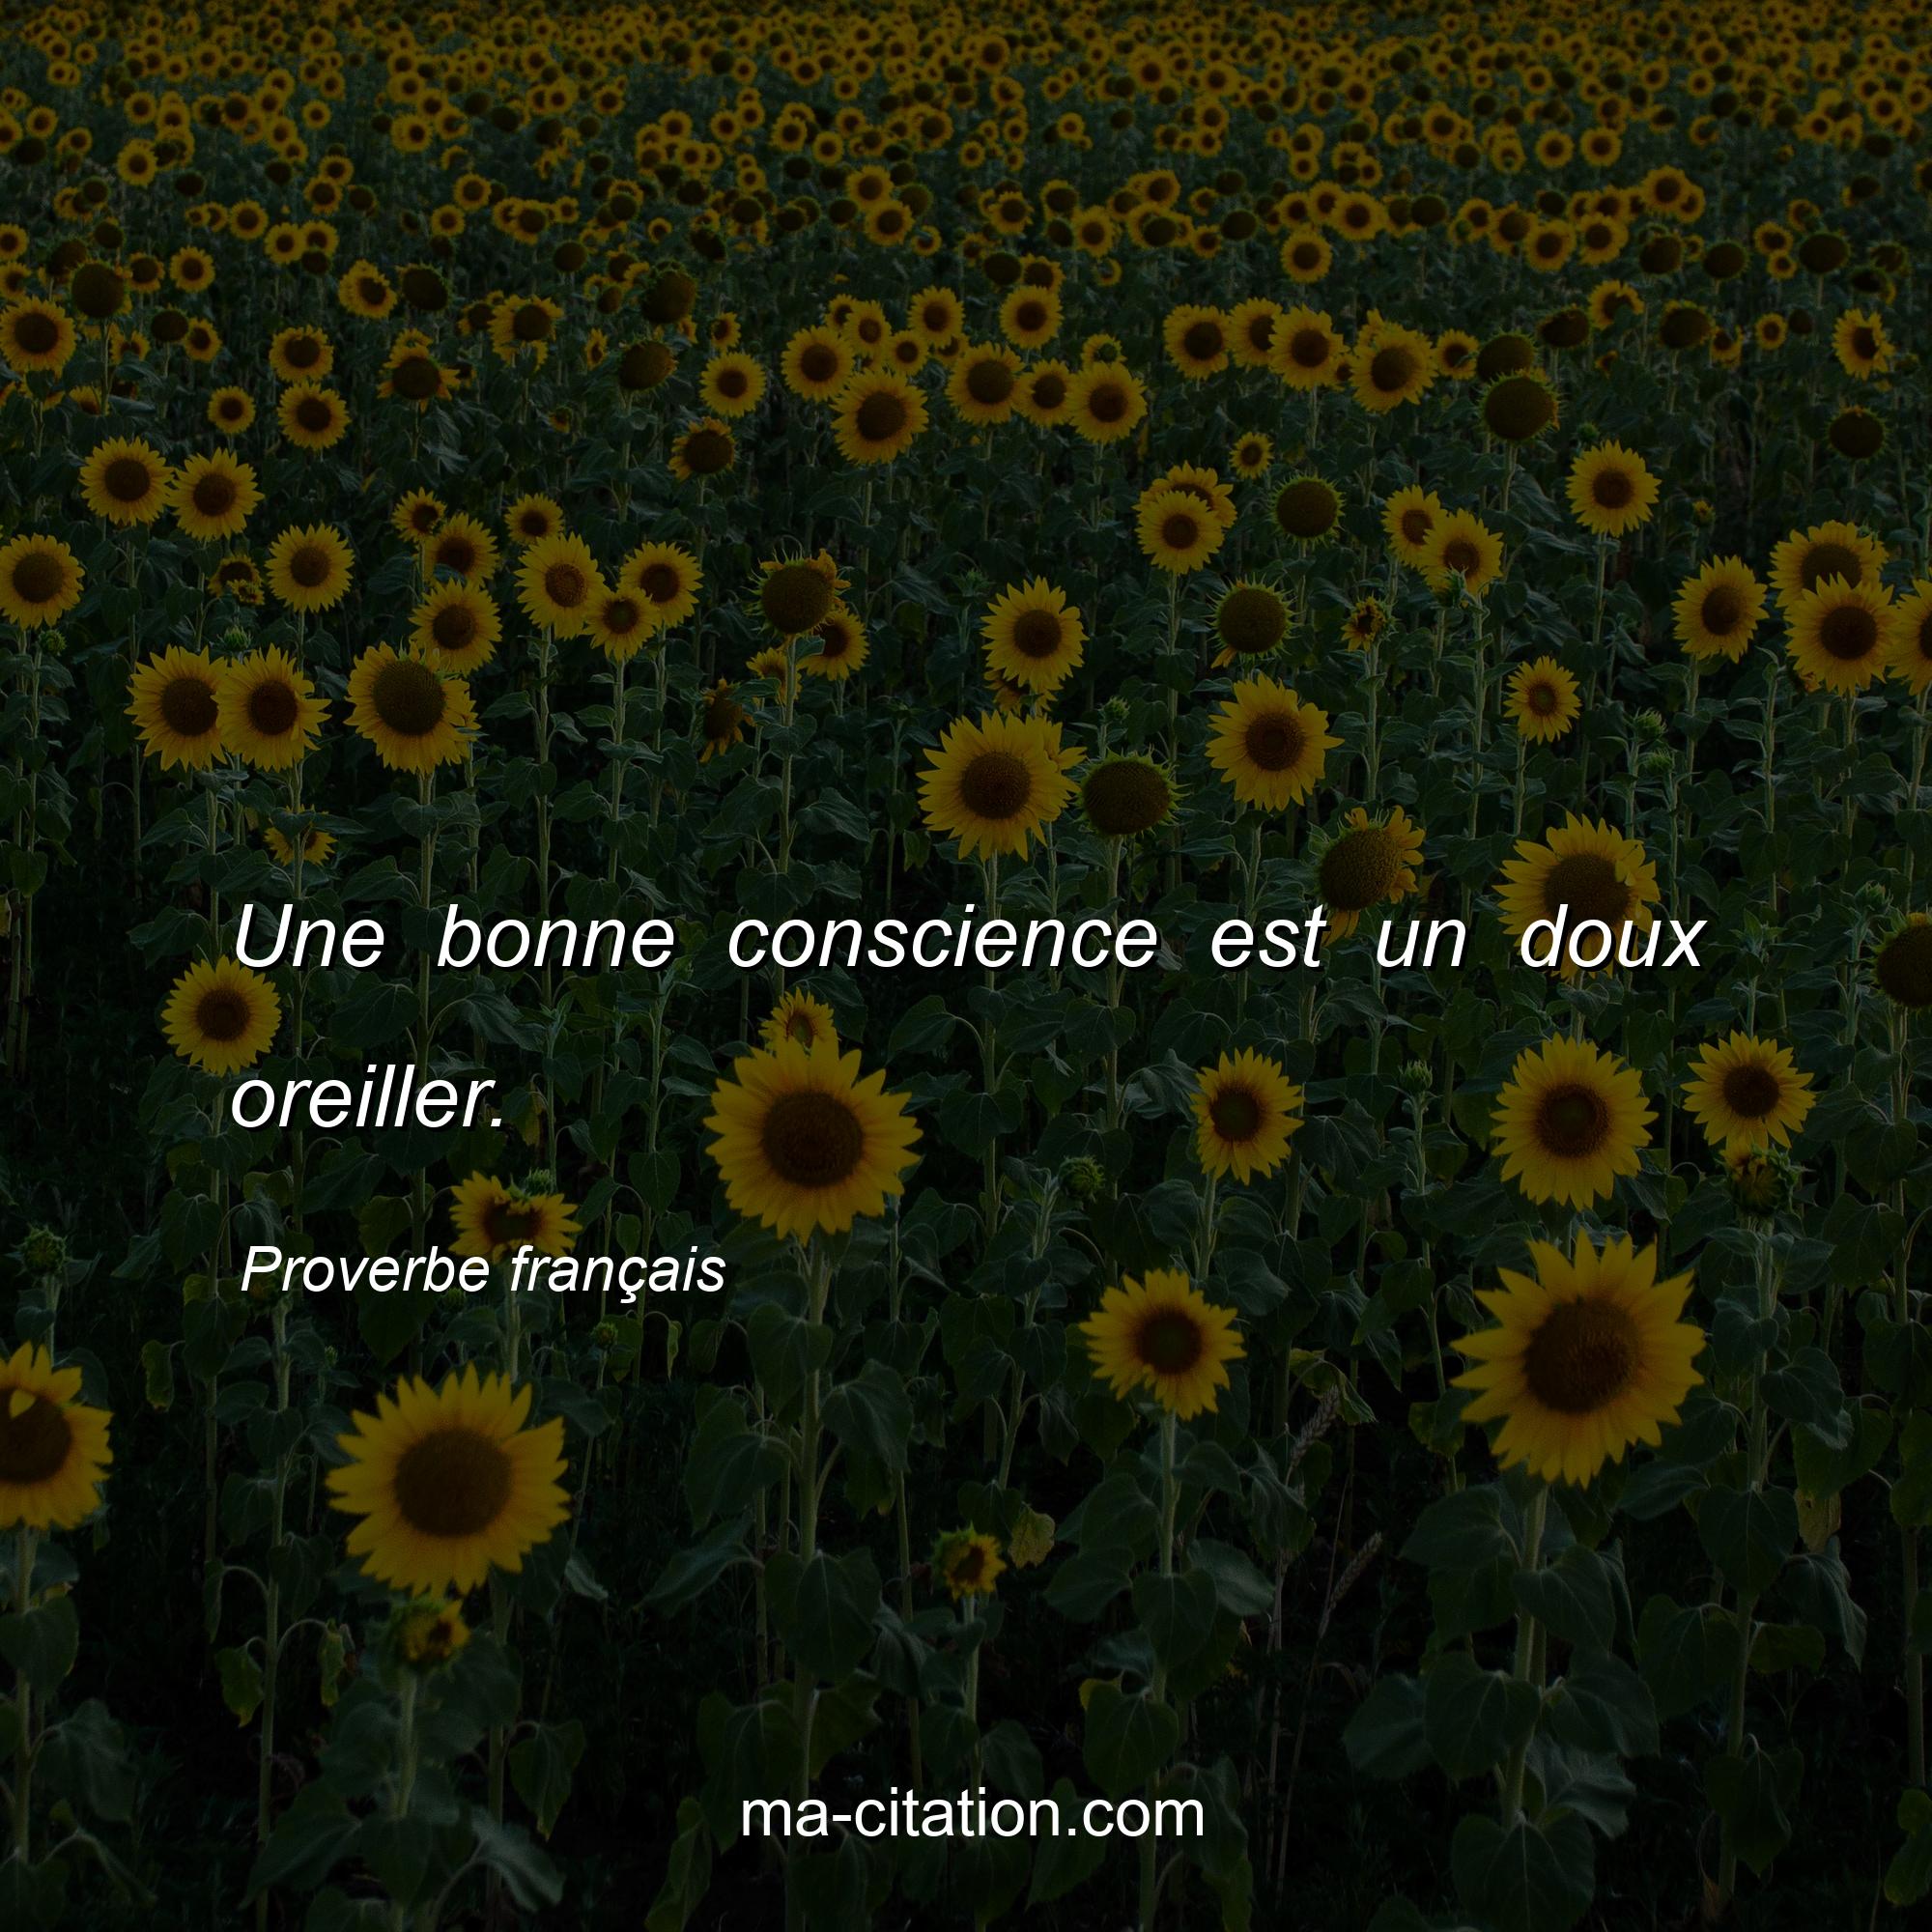 Proverbe français : Une bonne conscience est un doux oreiller.